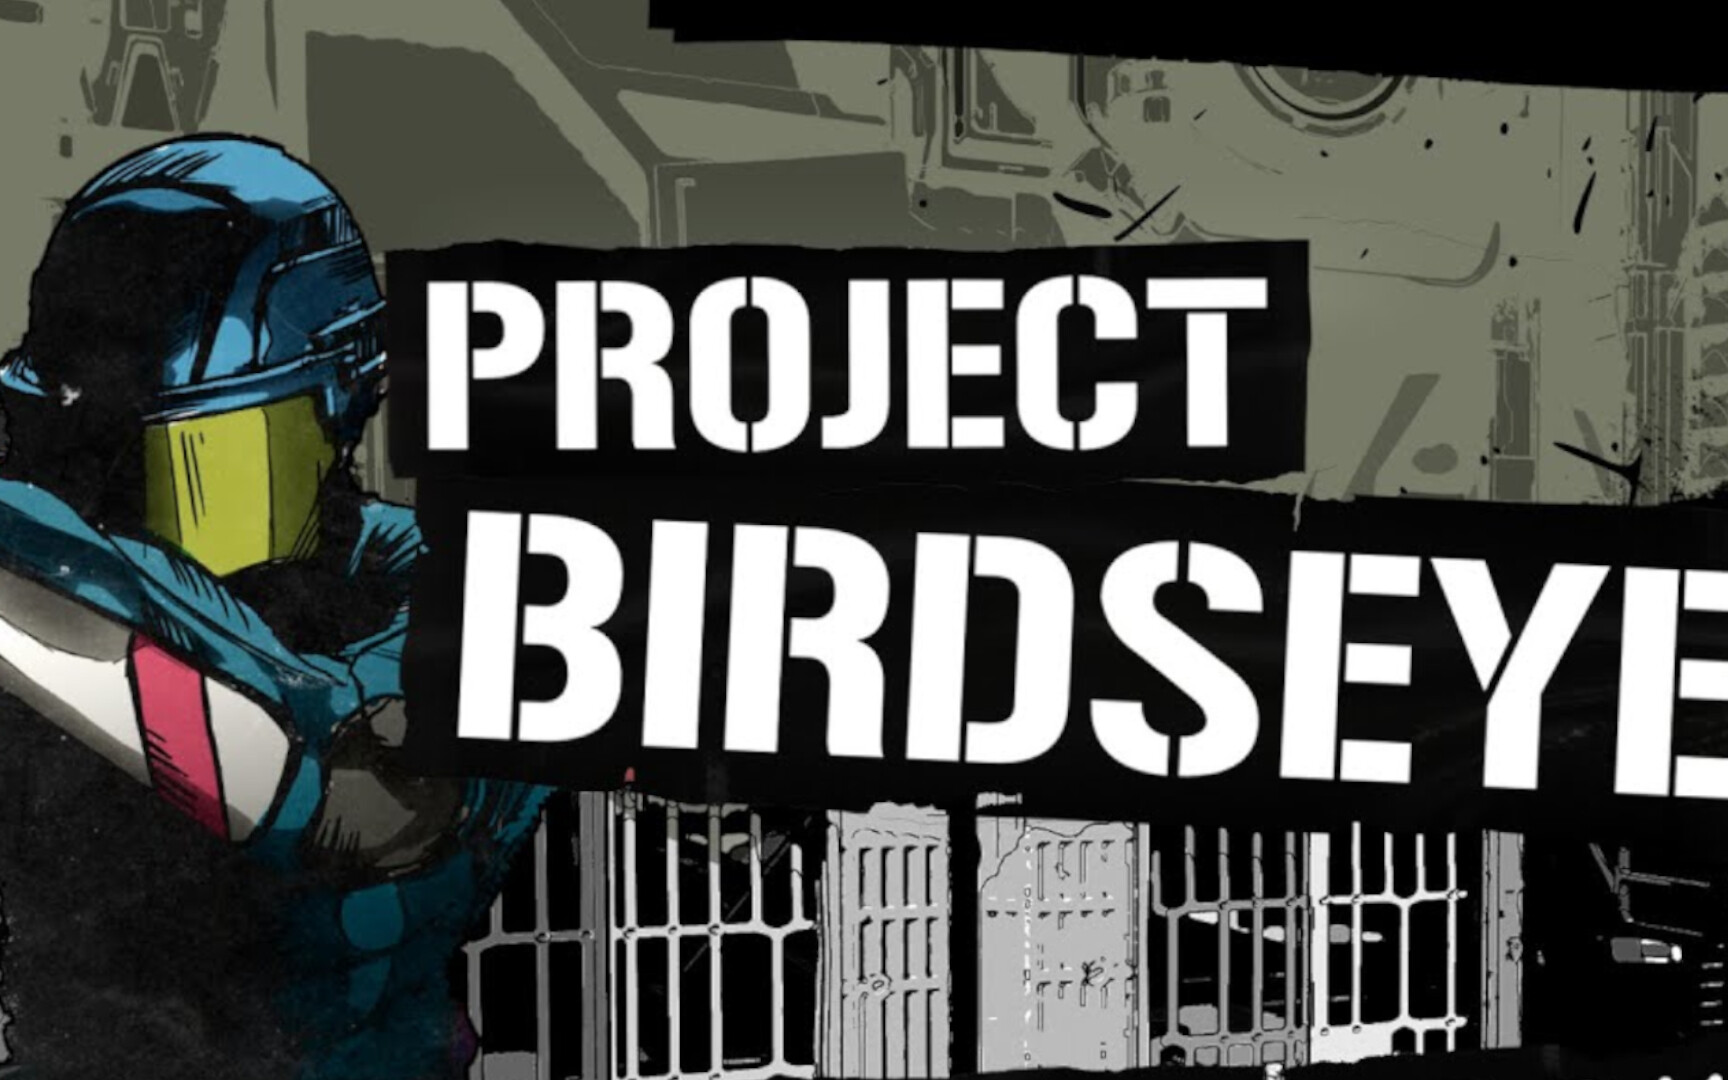 Project BirdsEye